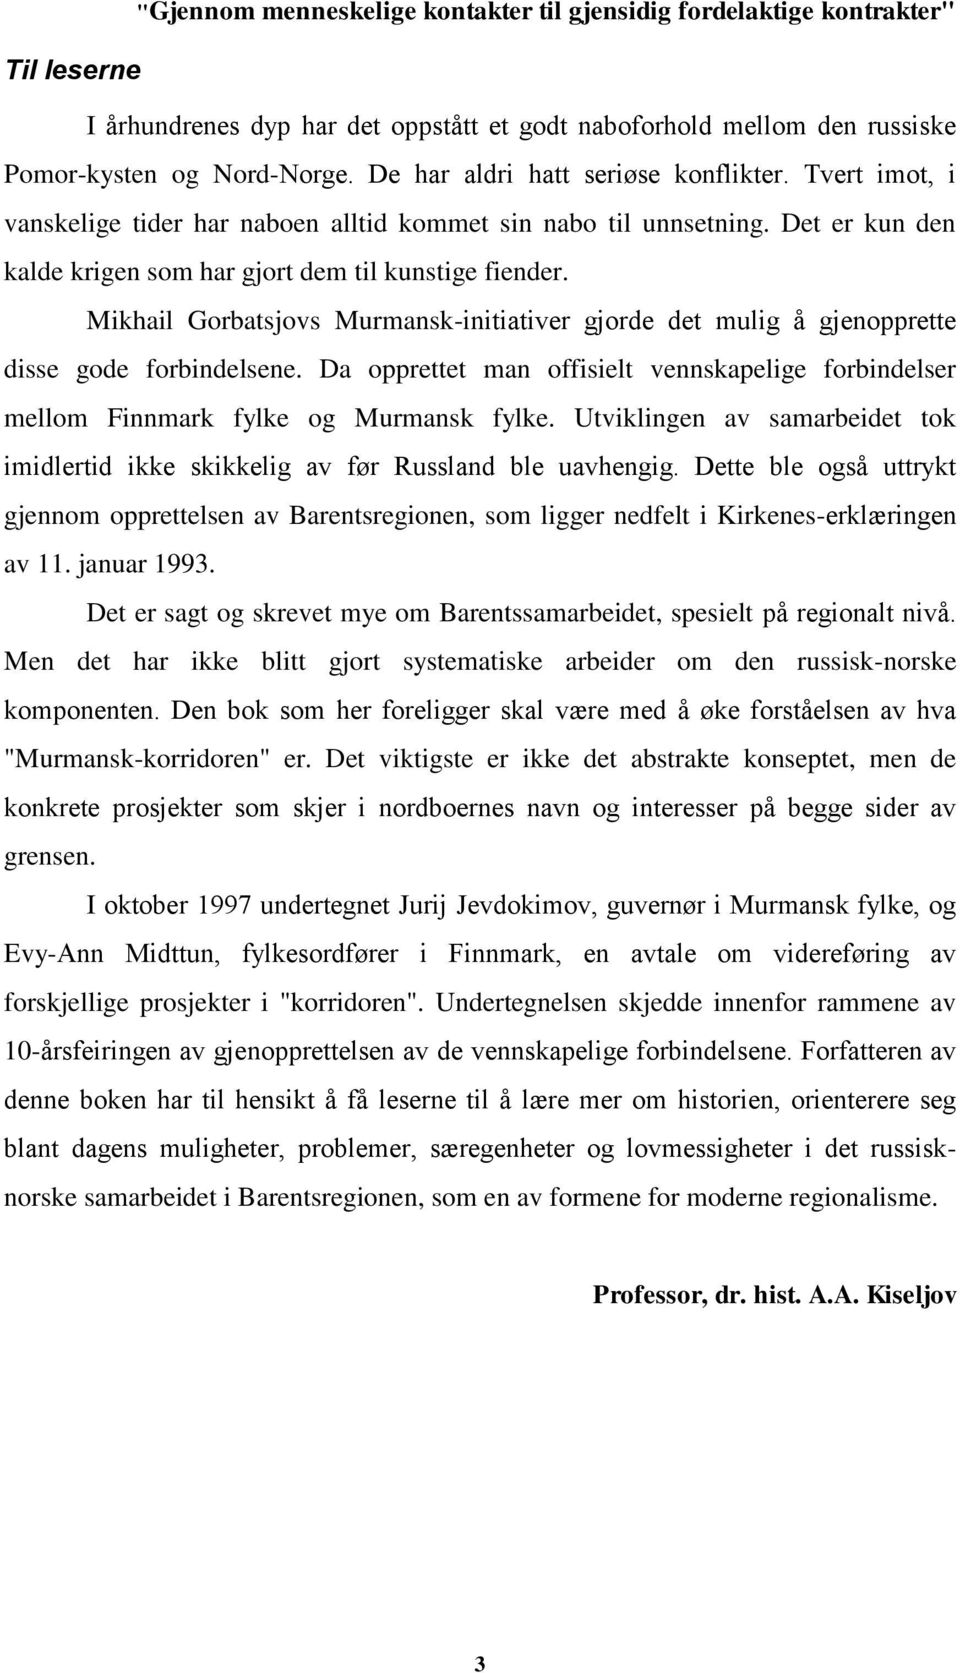 Mikhail Gorbatsjovs Murmansk-initiativer gjorde det mulig å gjenopprette disse gode forbindelsene. Da opprettet man offisielt vennskapelige forbindelser mellom Finnmark fylke og Murmansk fylke.